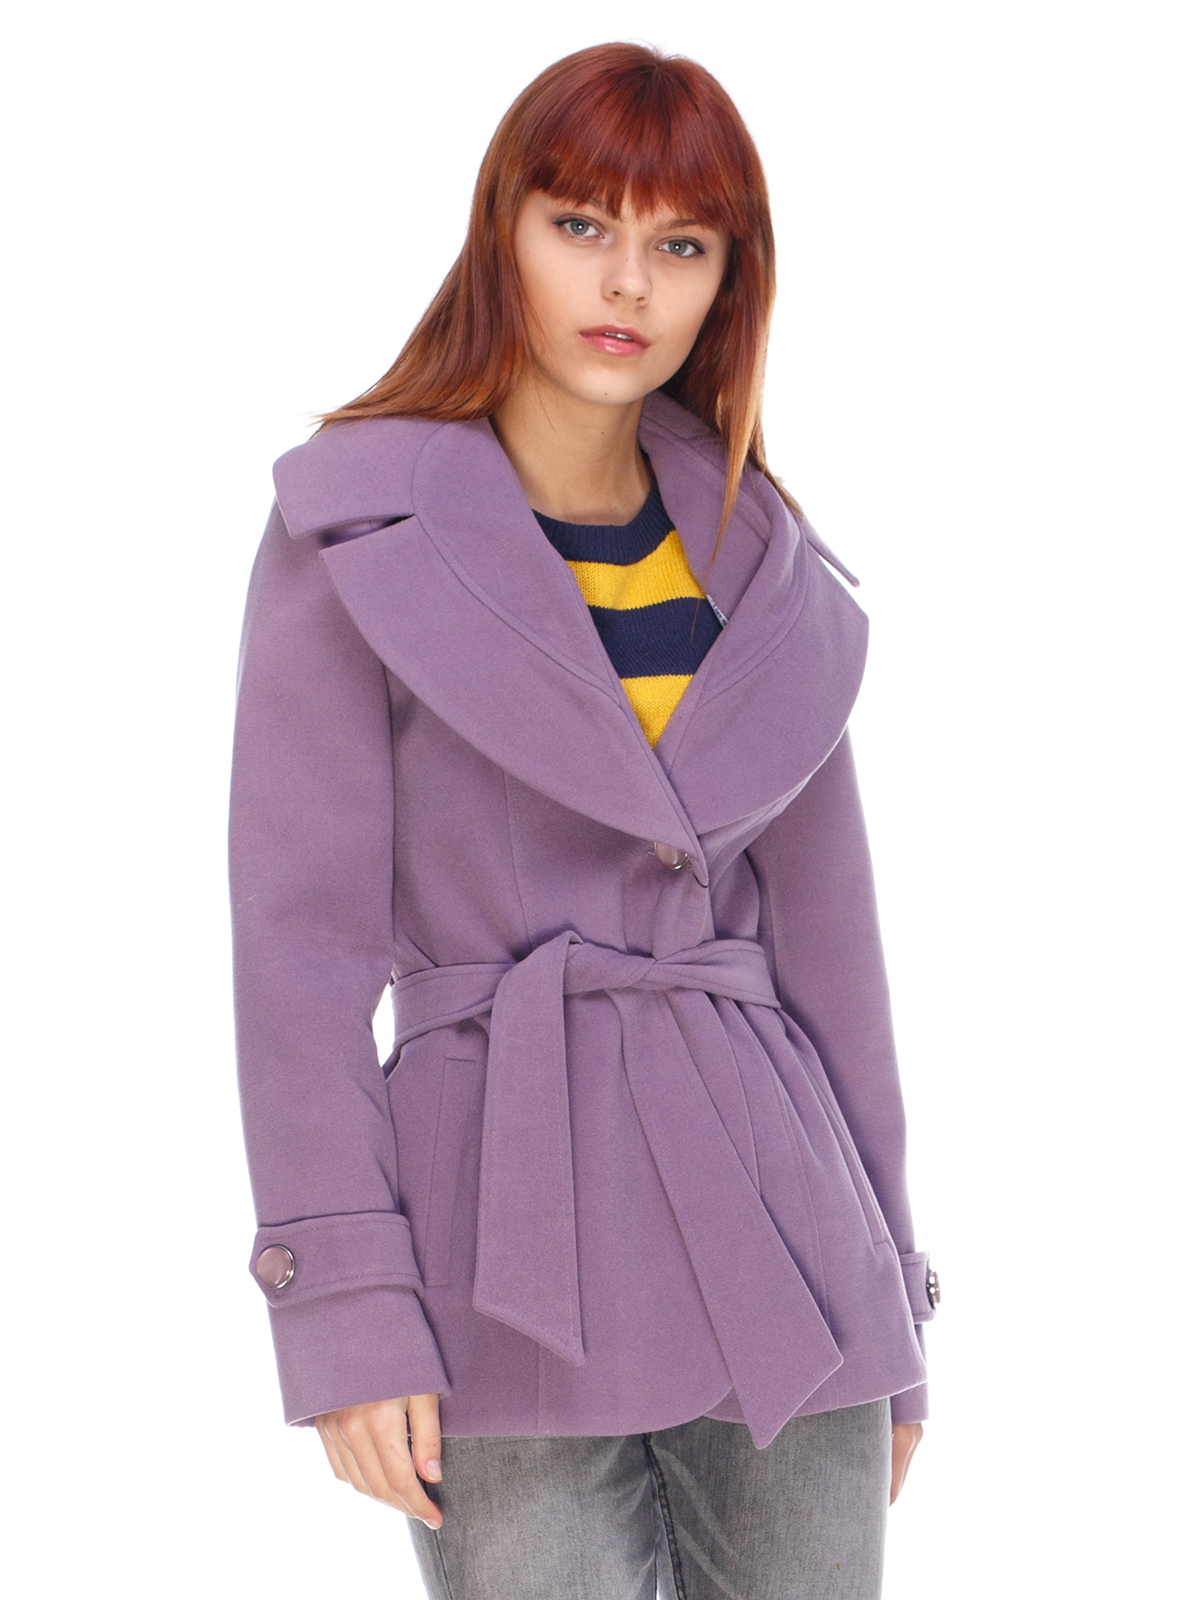 Фиолетовое женское пальто